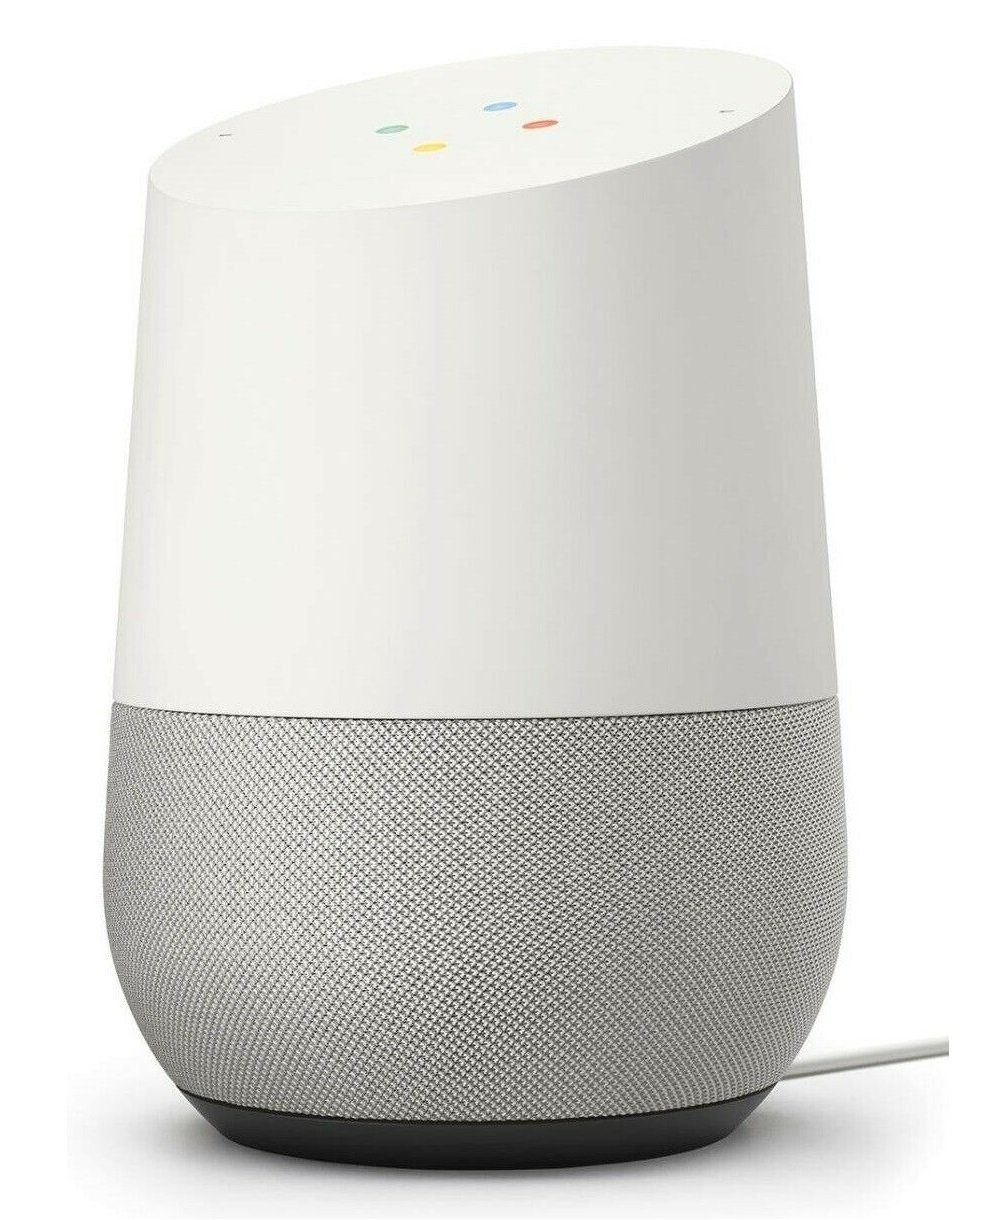 Google Home Smart Speaker Sprachassistent Streaming Box WLAN Lautsprecher weiß 